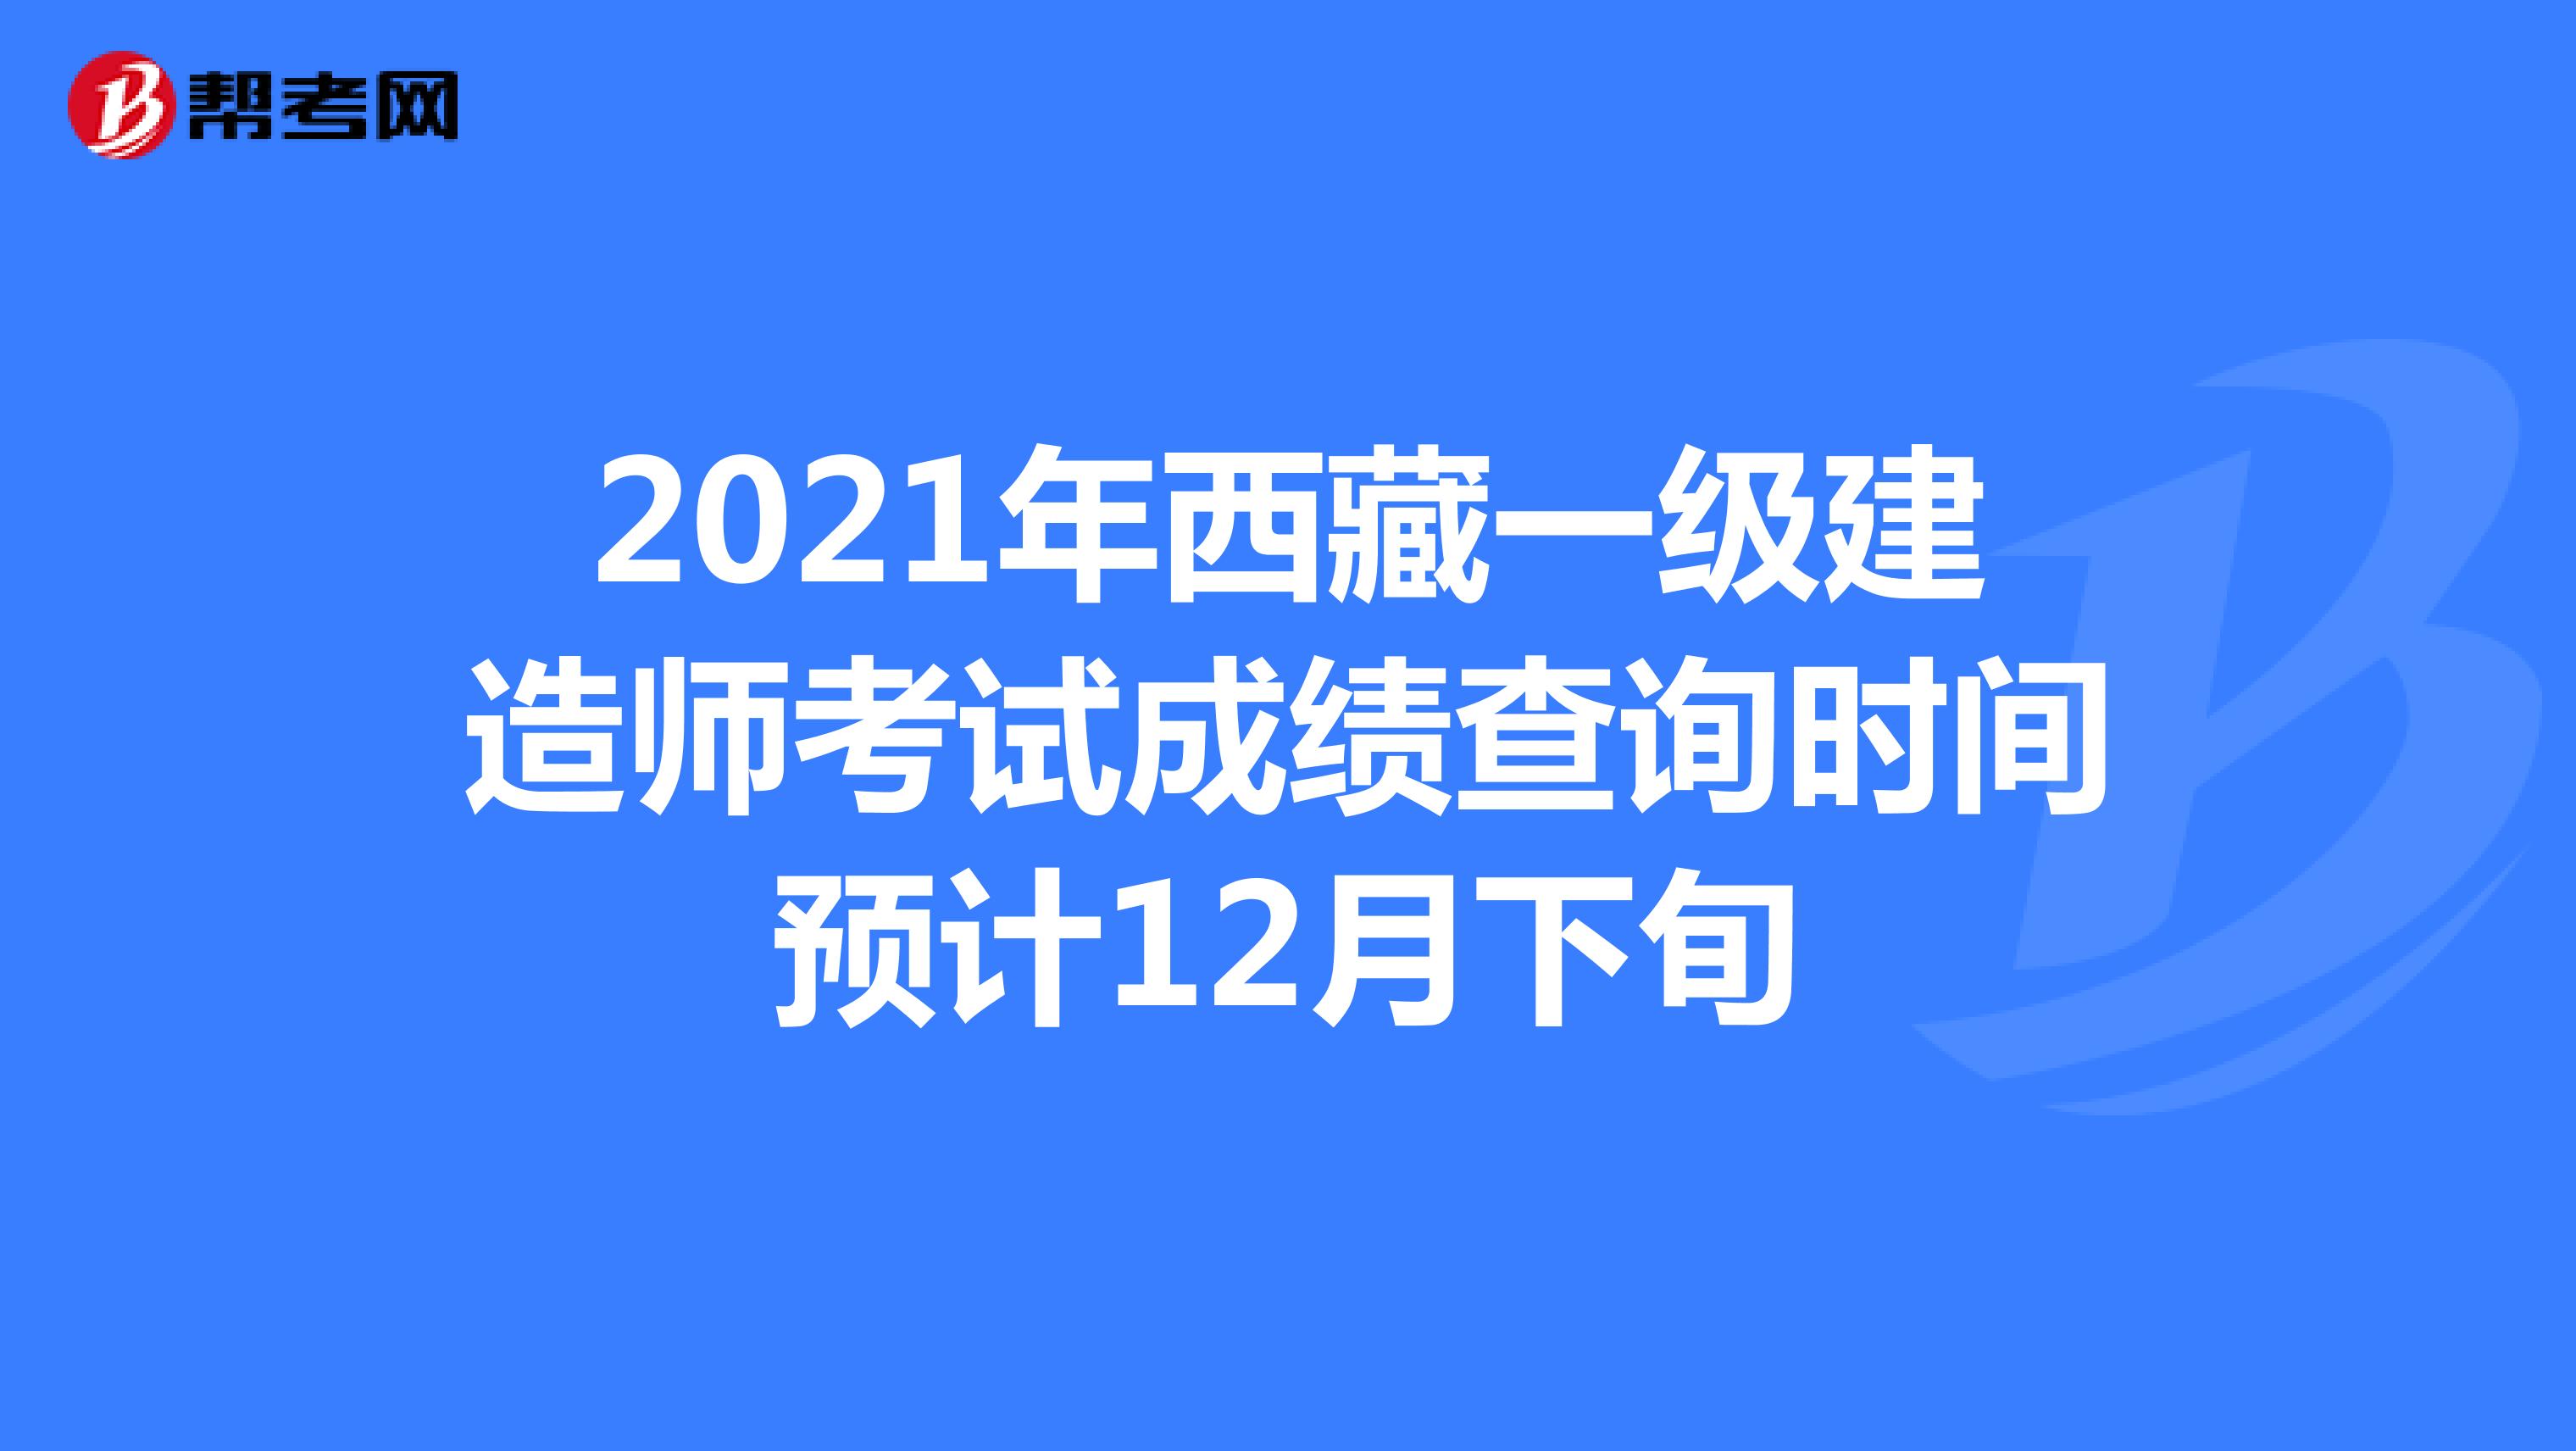 2021年西藏一级建造师考试成绩查询时间预计12月下旬